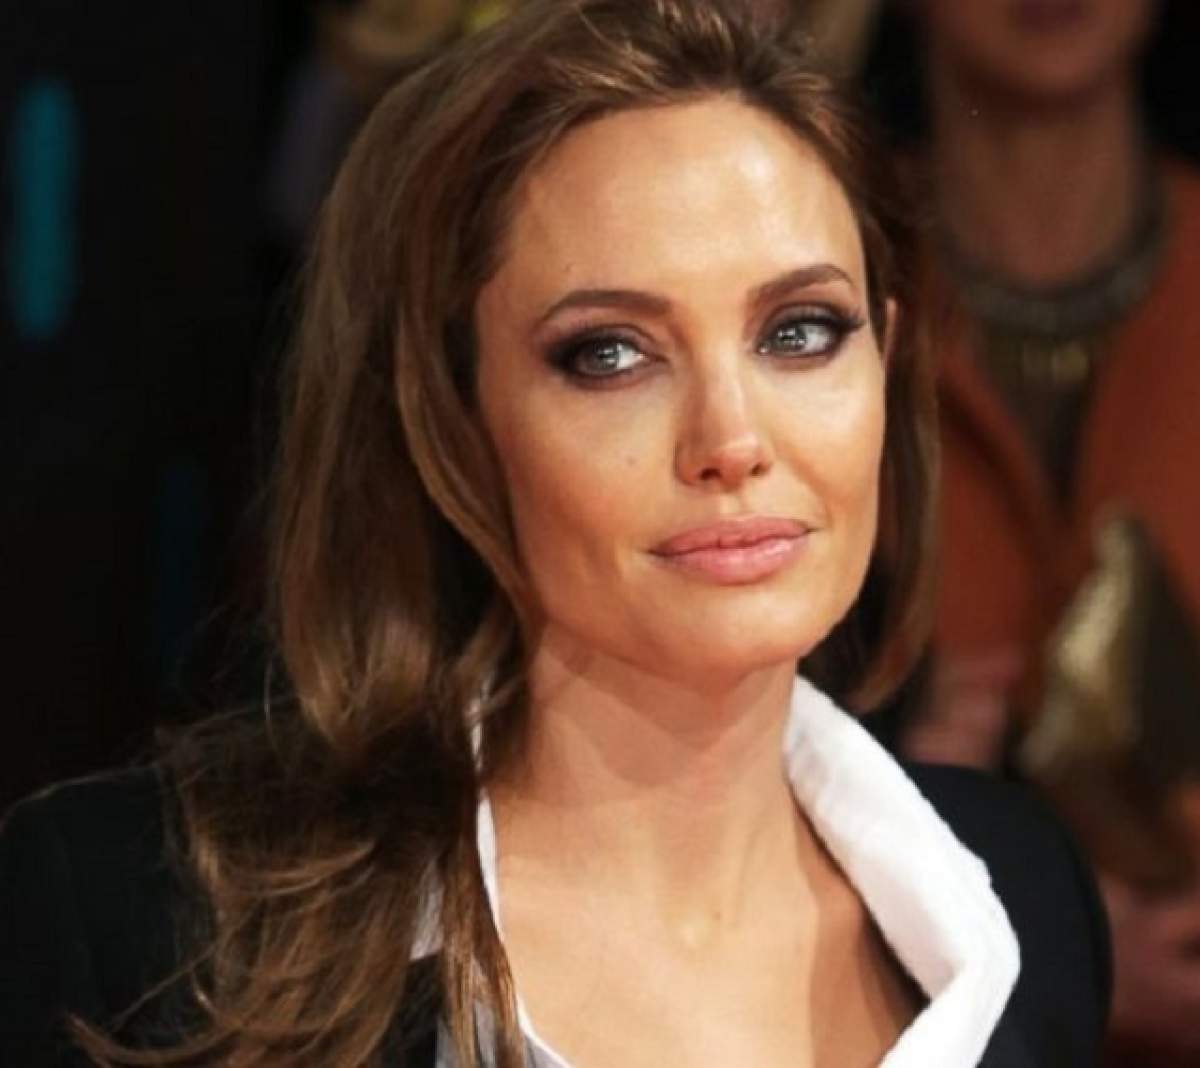 Angelina Jolie, declaraţie uluitoare! Se teme pentru viaţa ei, însă acest lucru o face mai puternică